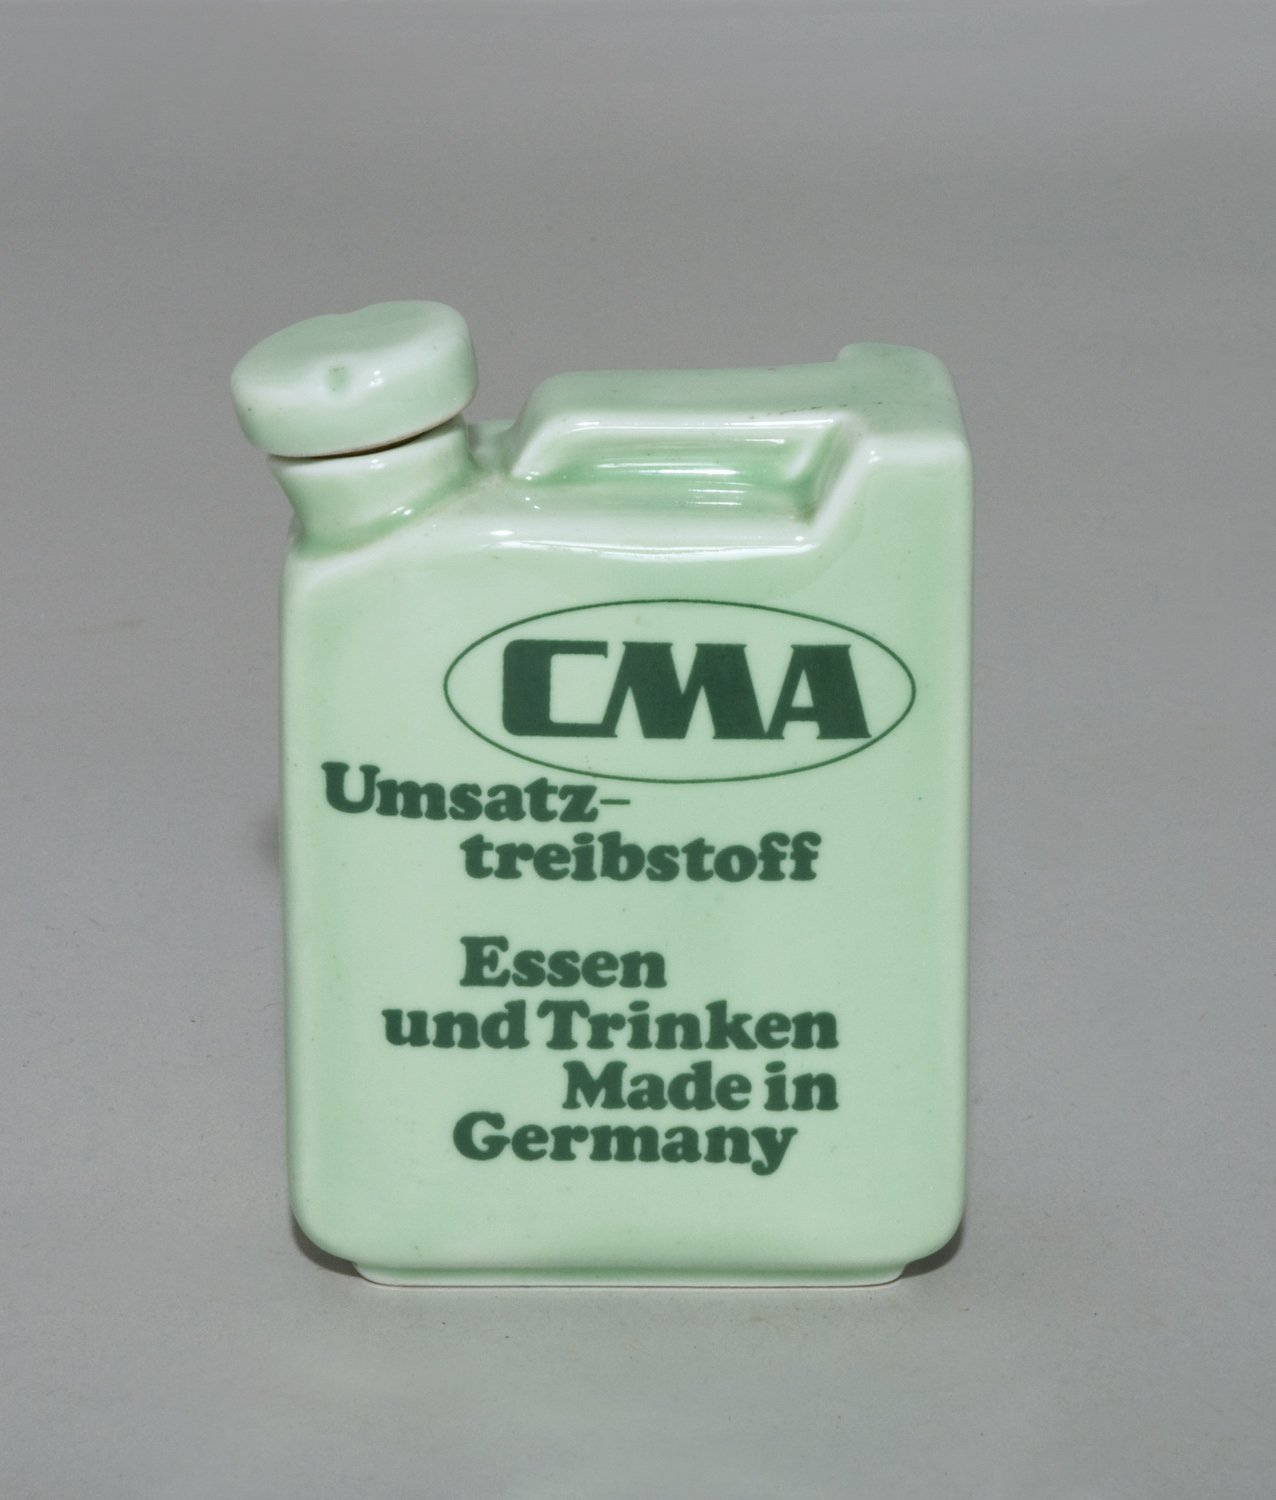 Porzellanflasche in Form eines Treibstoffkanisters (CMA) (Stiftung Domäne Dahlem - Landgut und Museum, Weiternutzung nur mit Genehmigung des Museums CC BY-NC-SA)